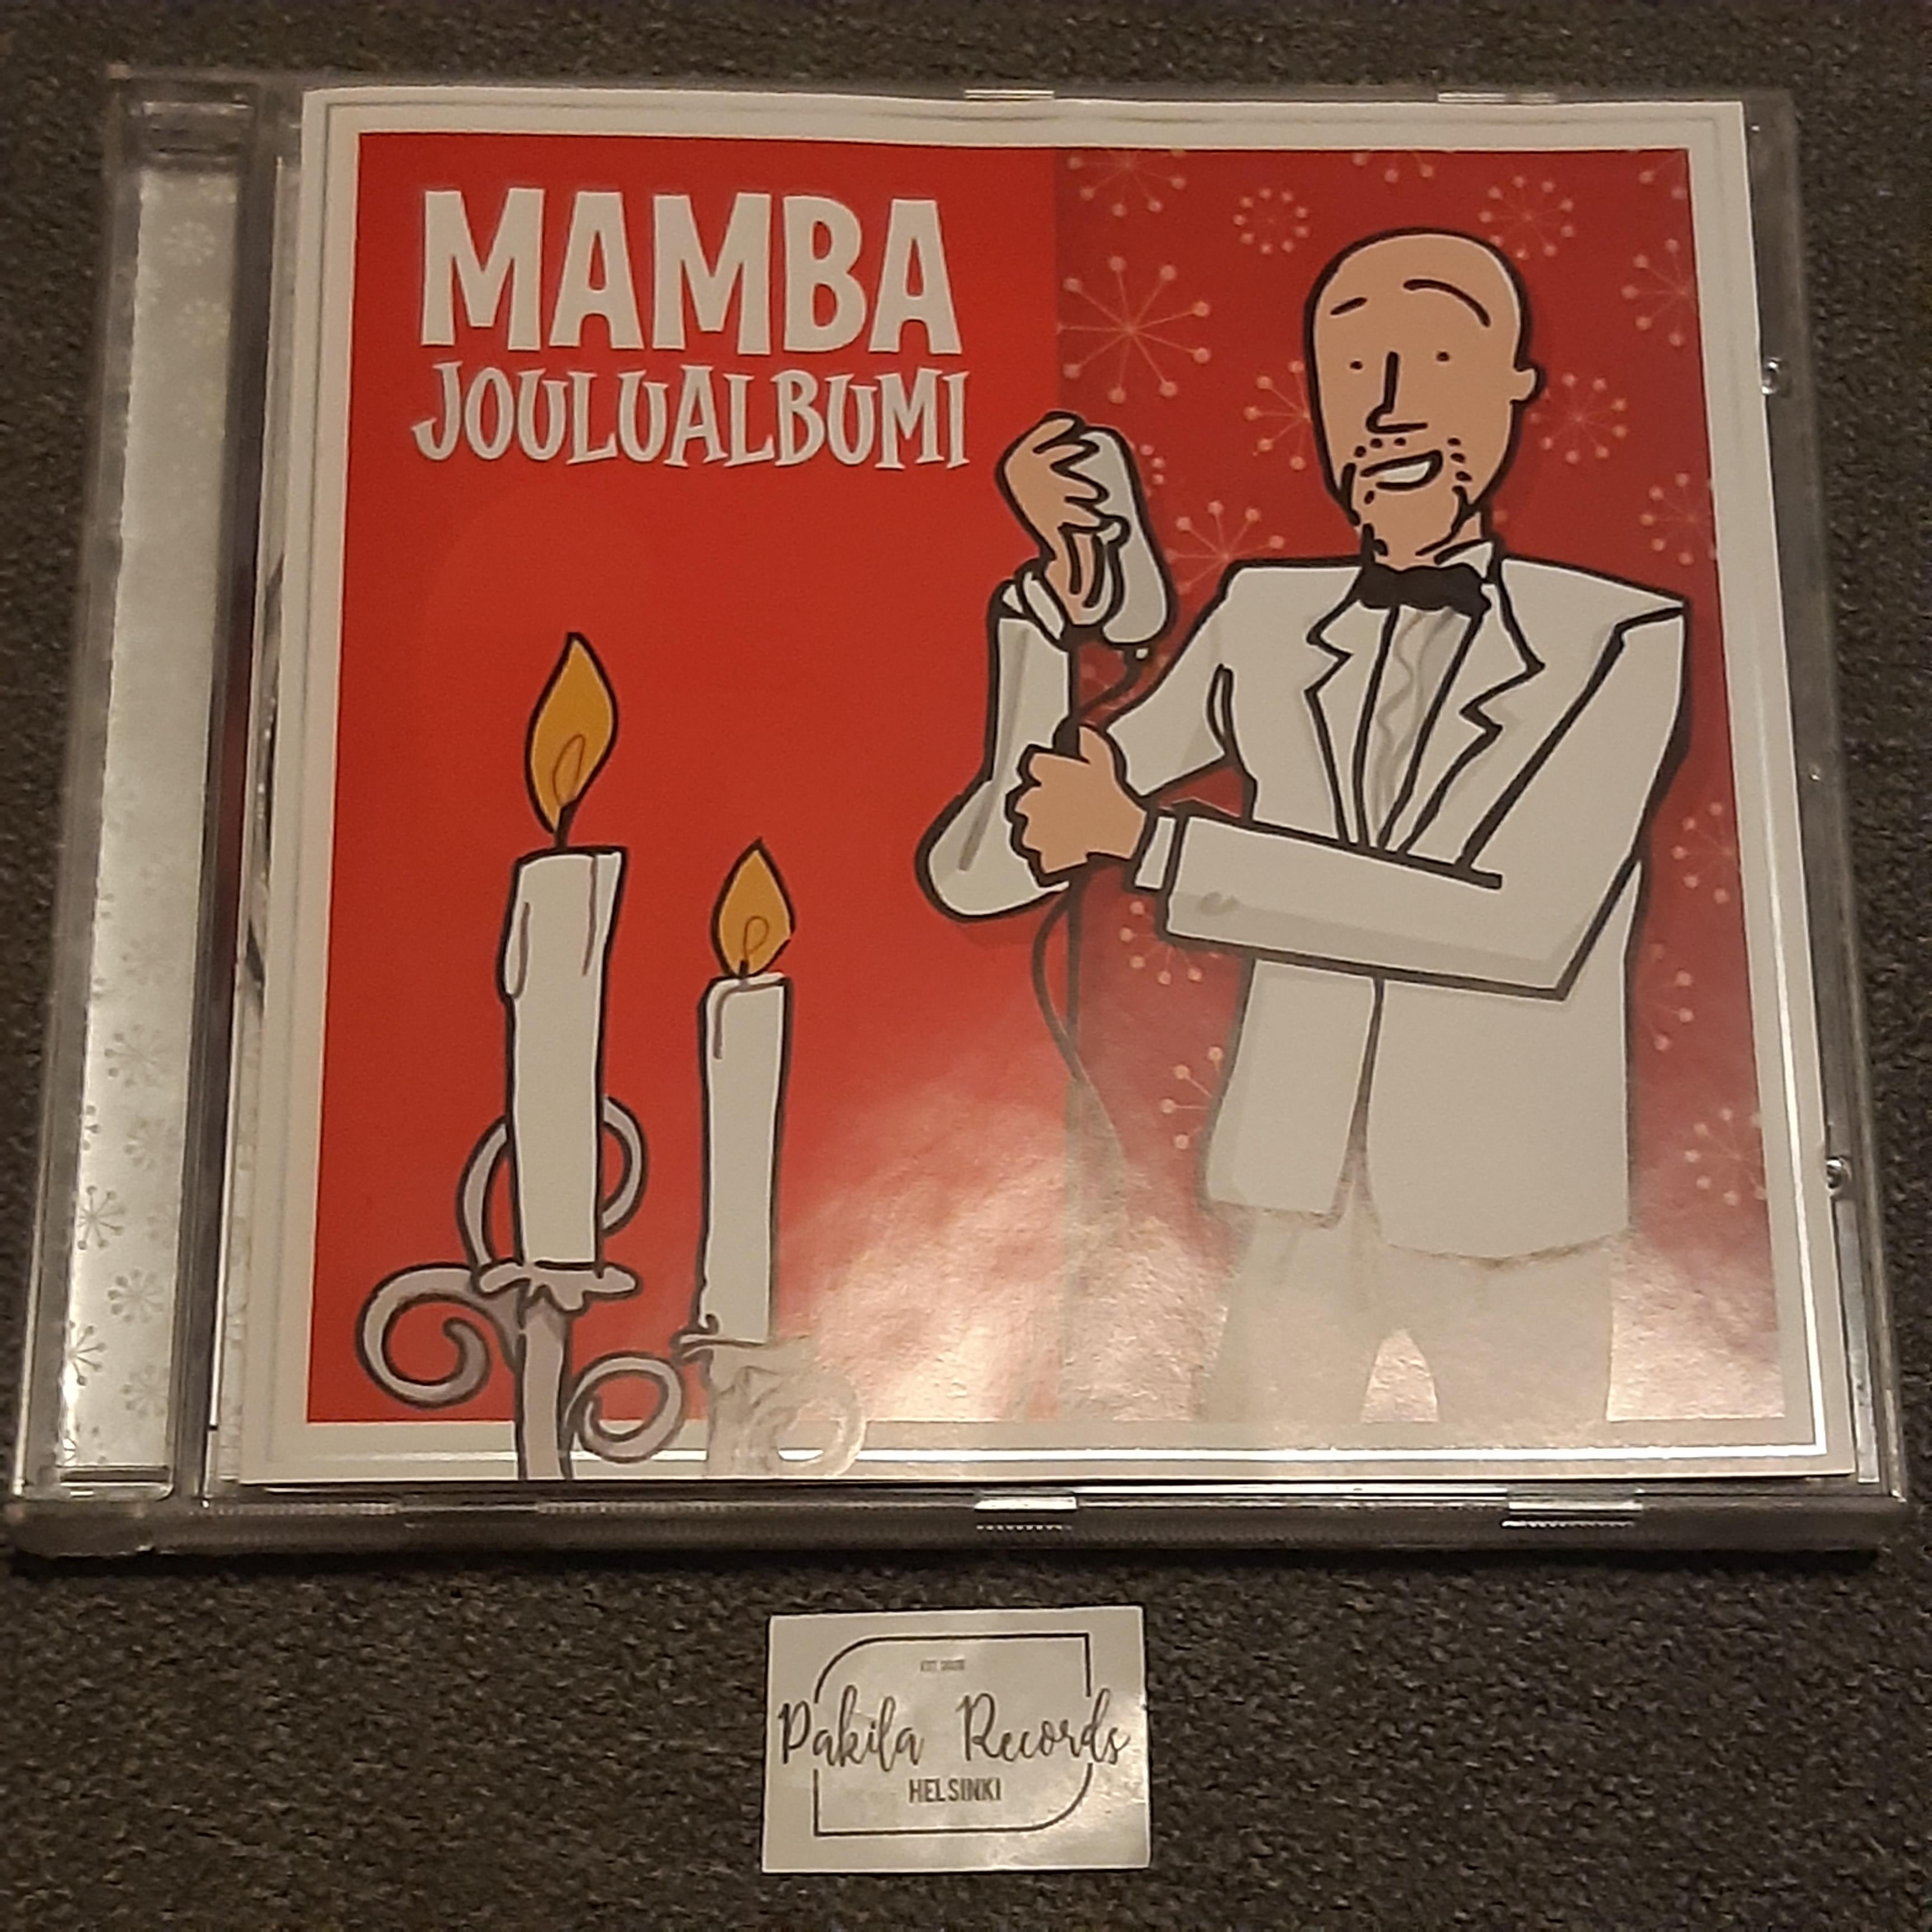 Mamba - Joulualbumi - CD (käytetty)